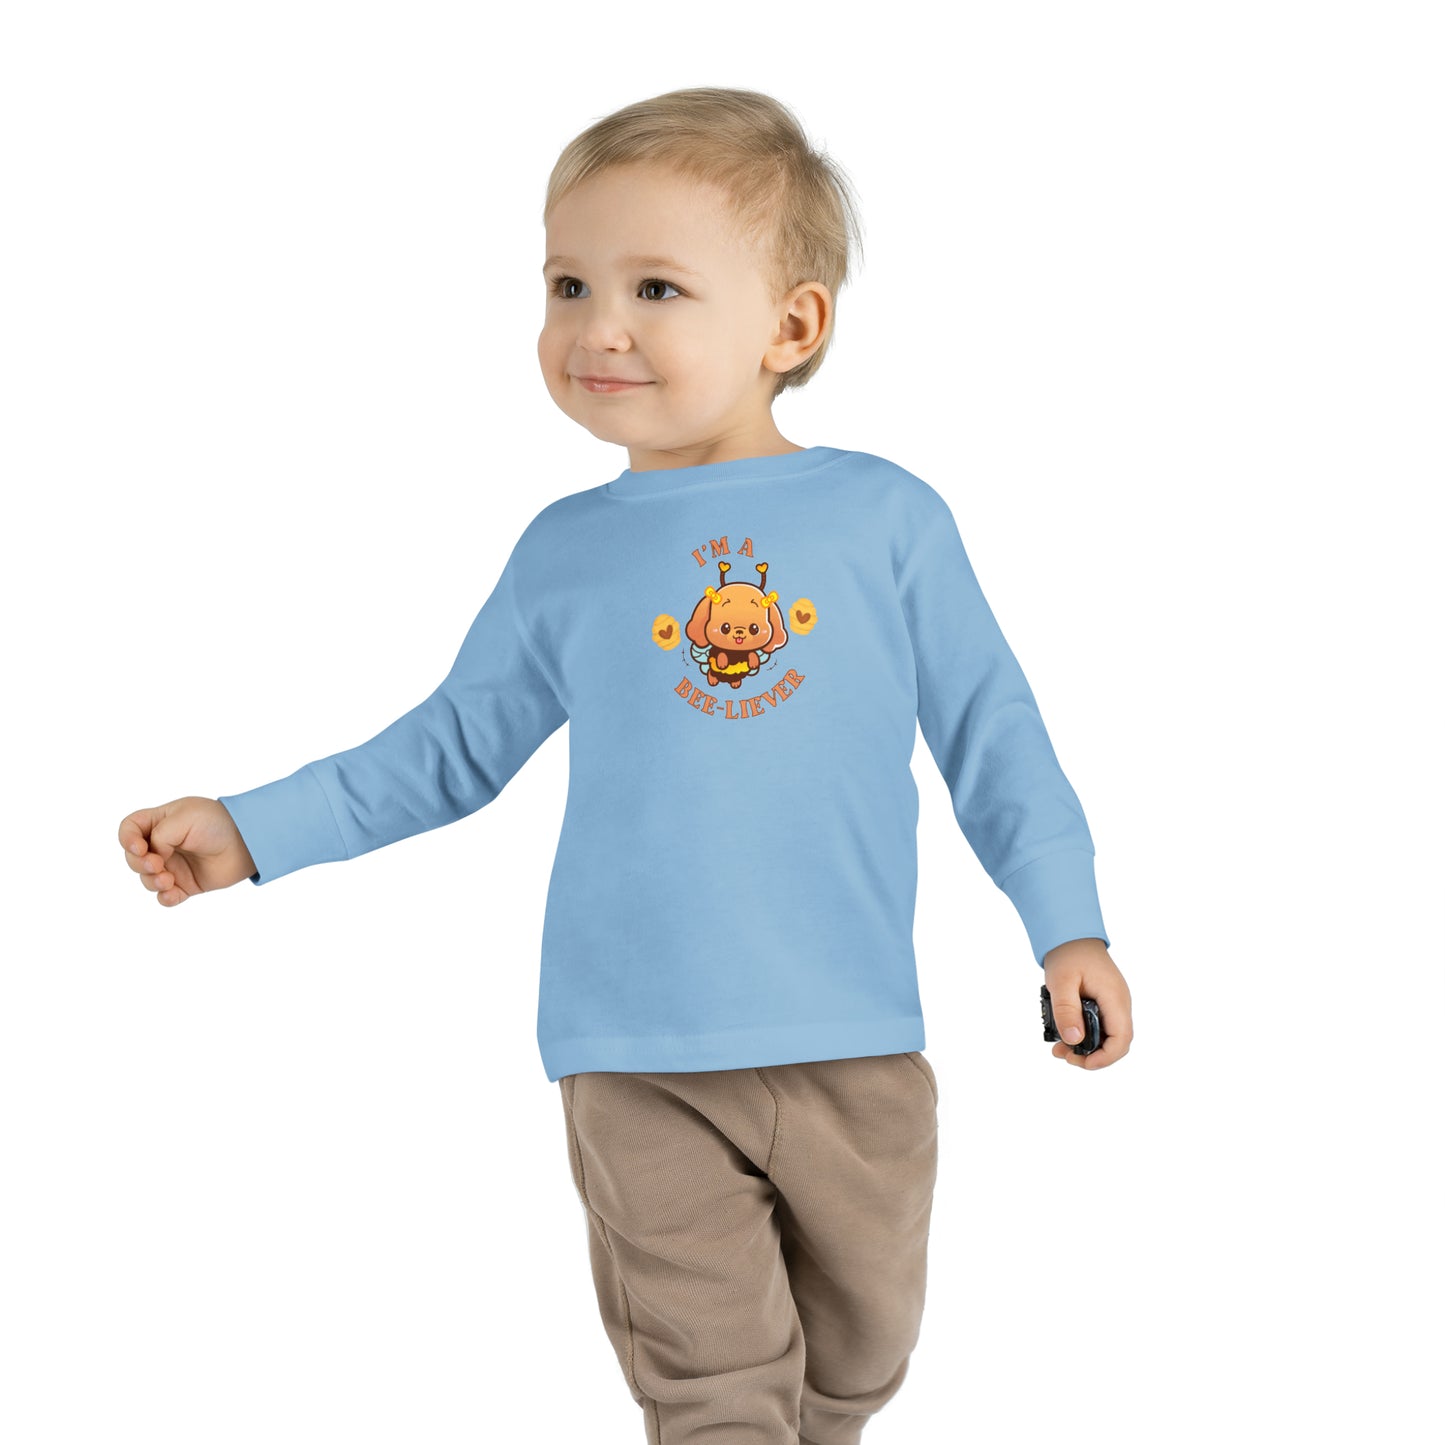 Christian Toddler Long Sleeve Tee, Faith Toddler T-Shirt, Kids Long Sleeve Faith T-shirt